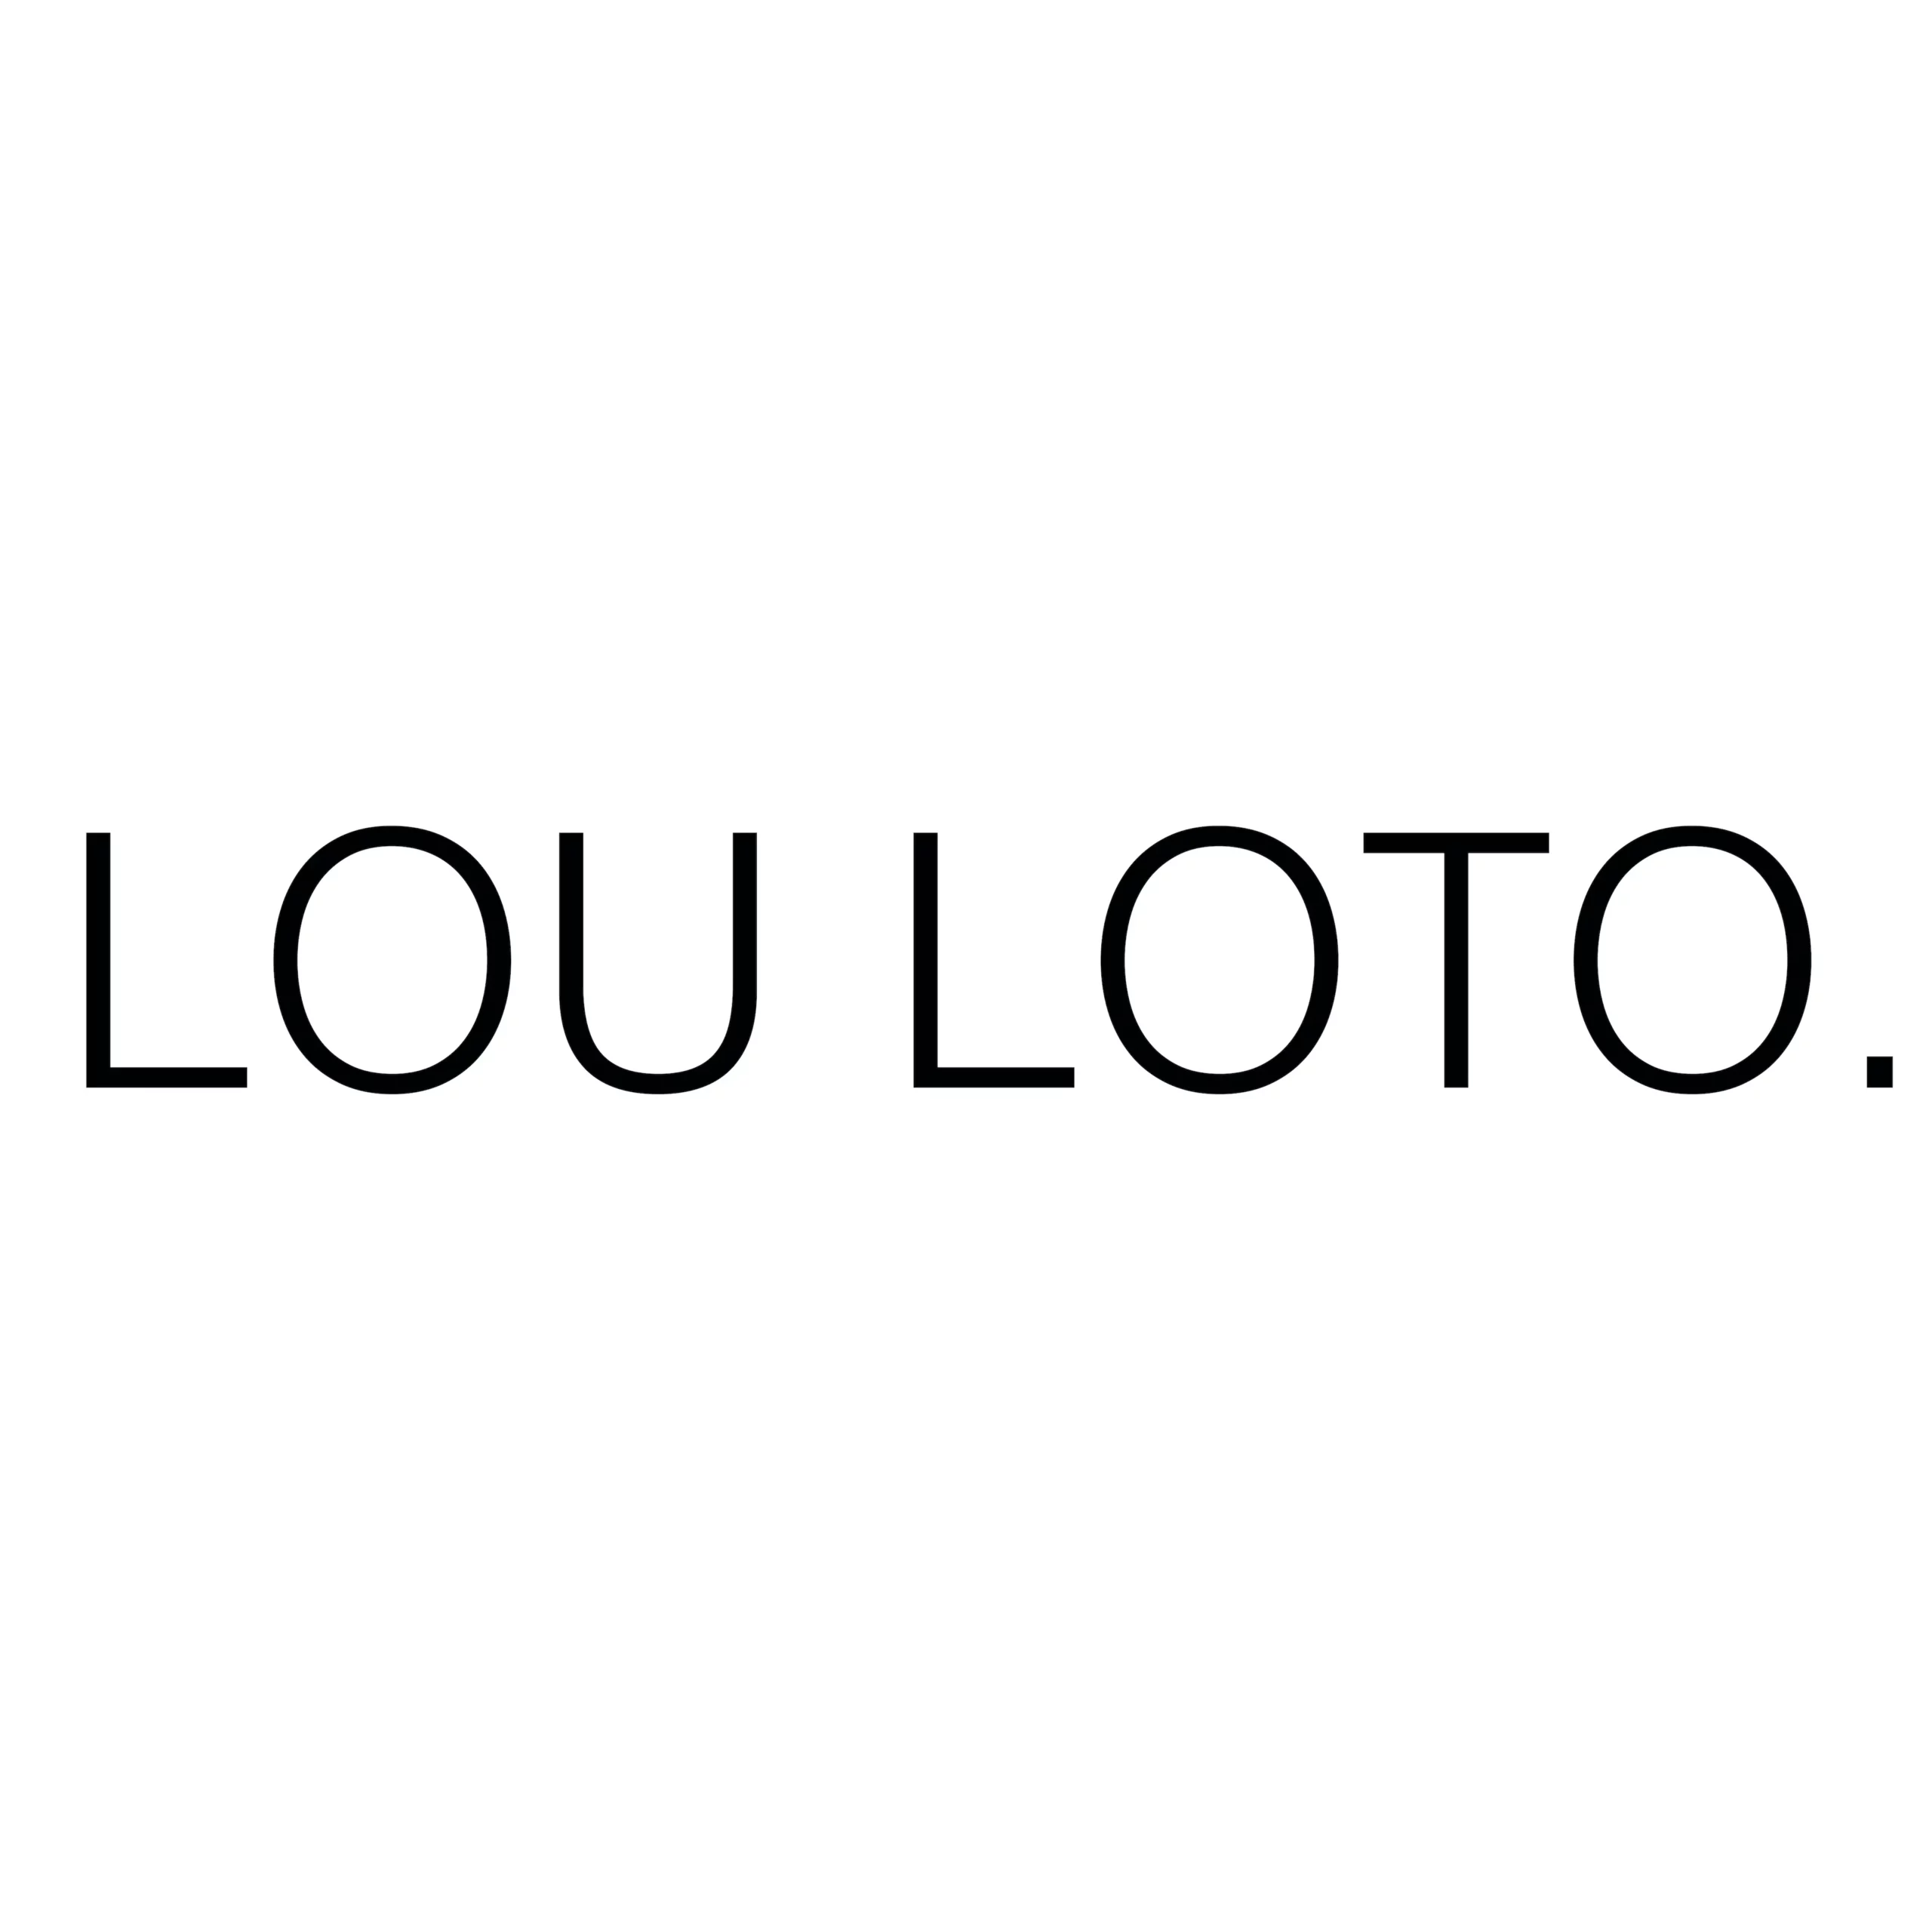 Lou Loto